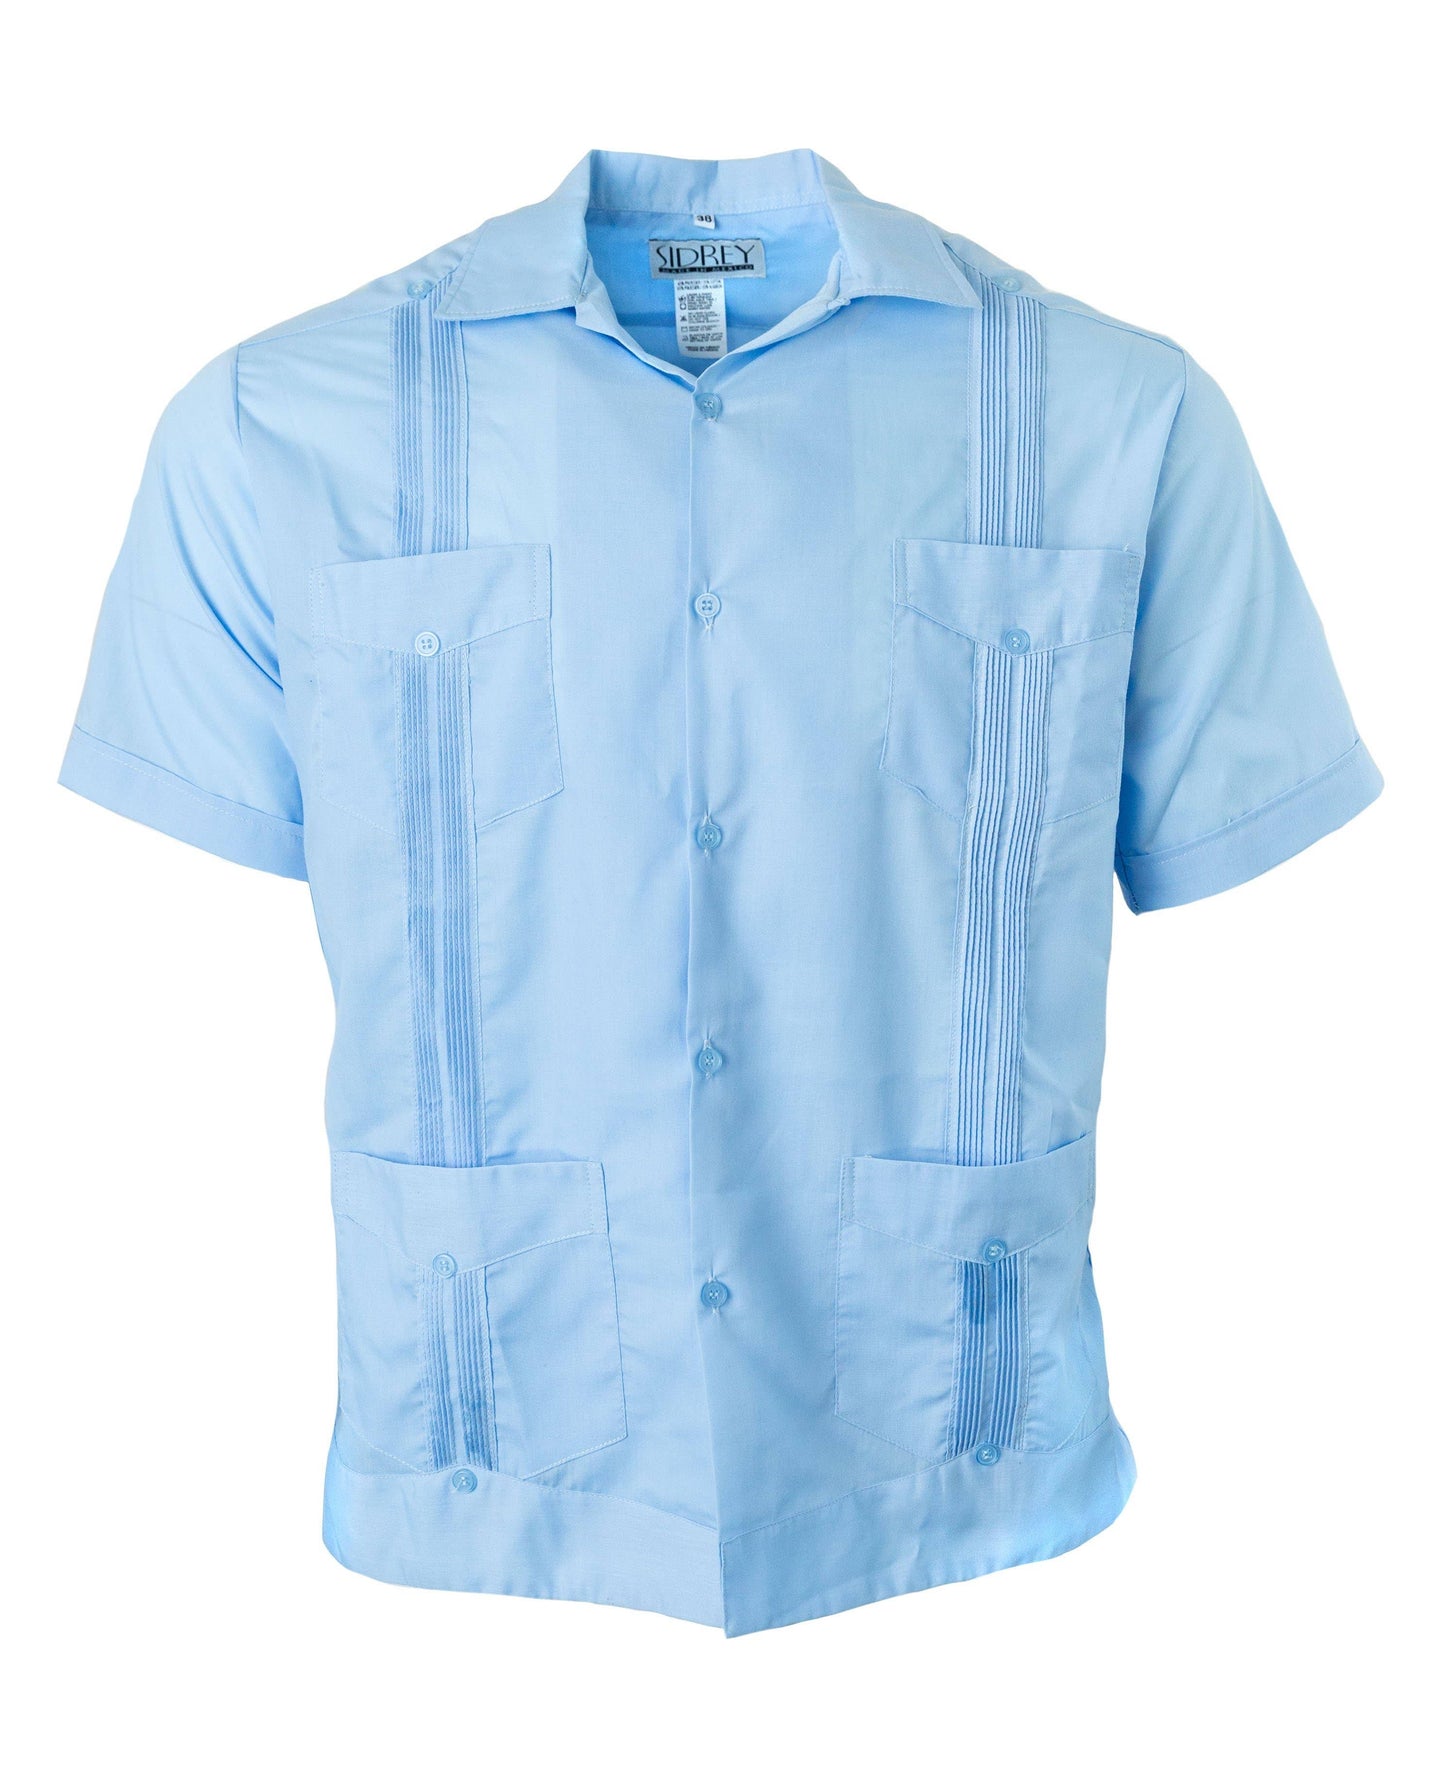 SIDREY Guayabera Classic Shirt- Light Blue